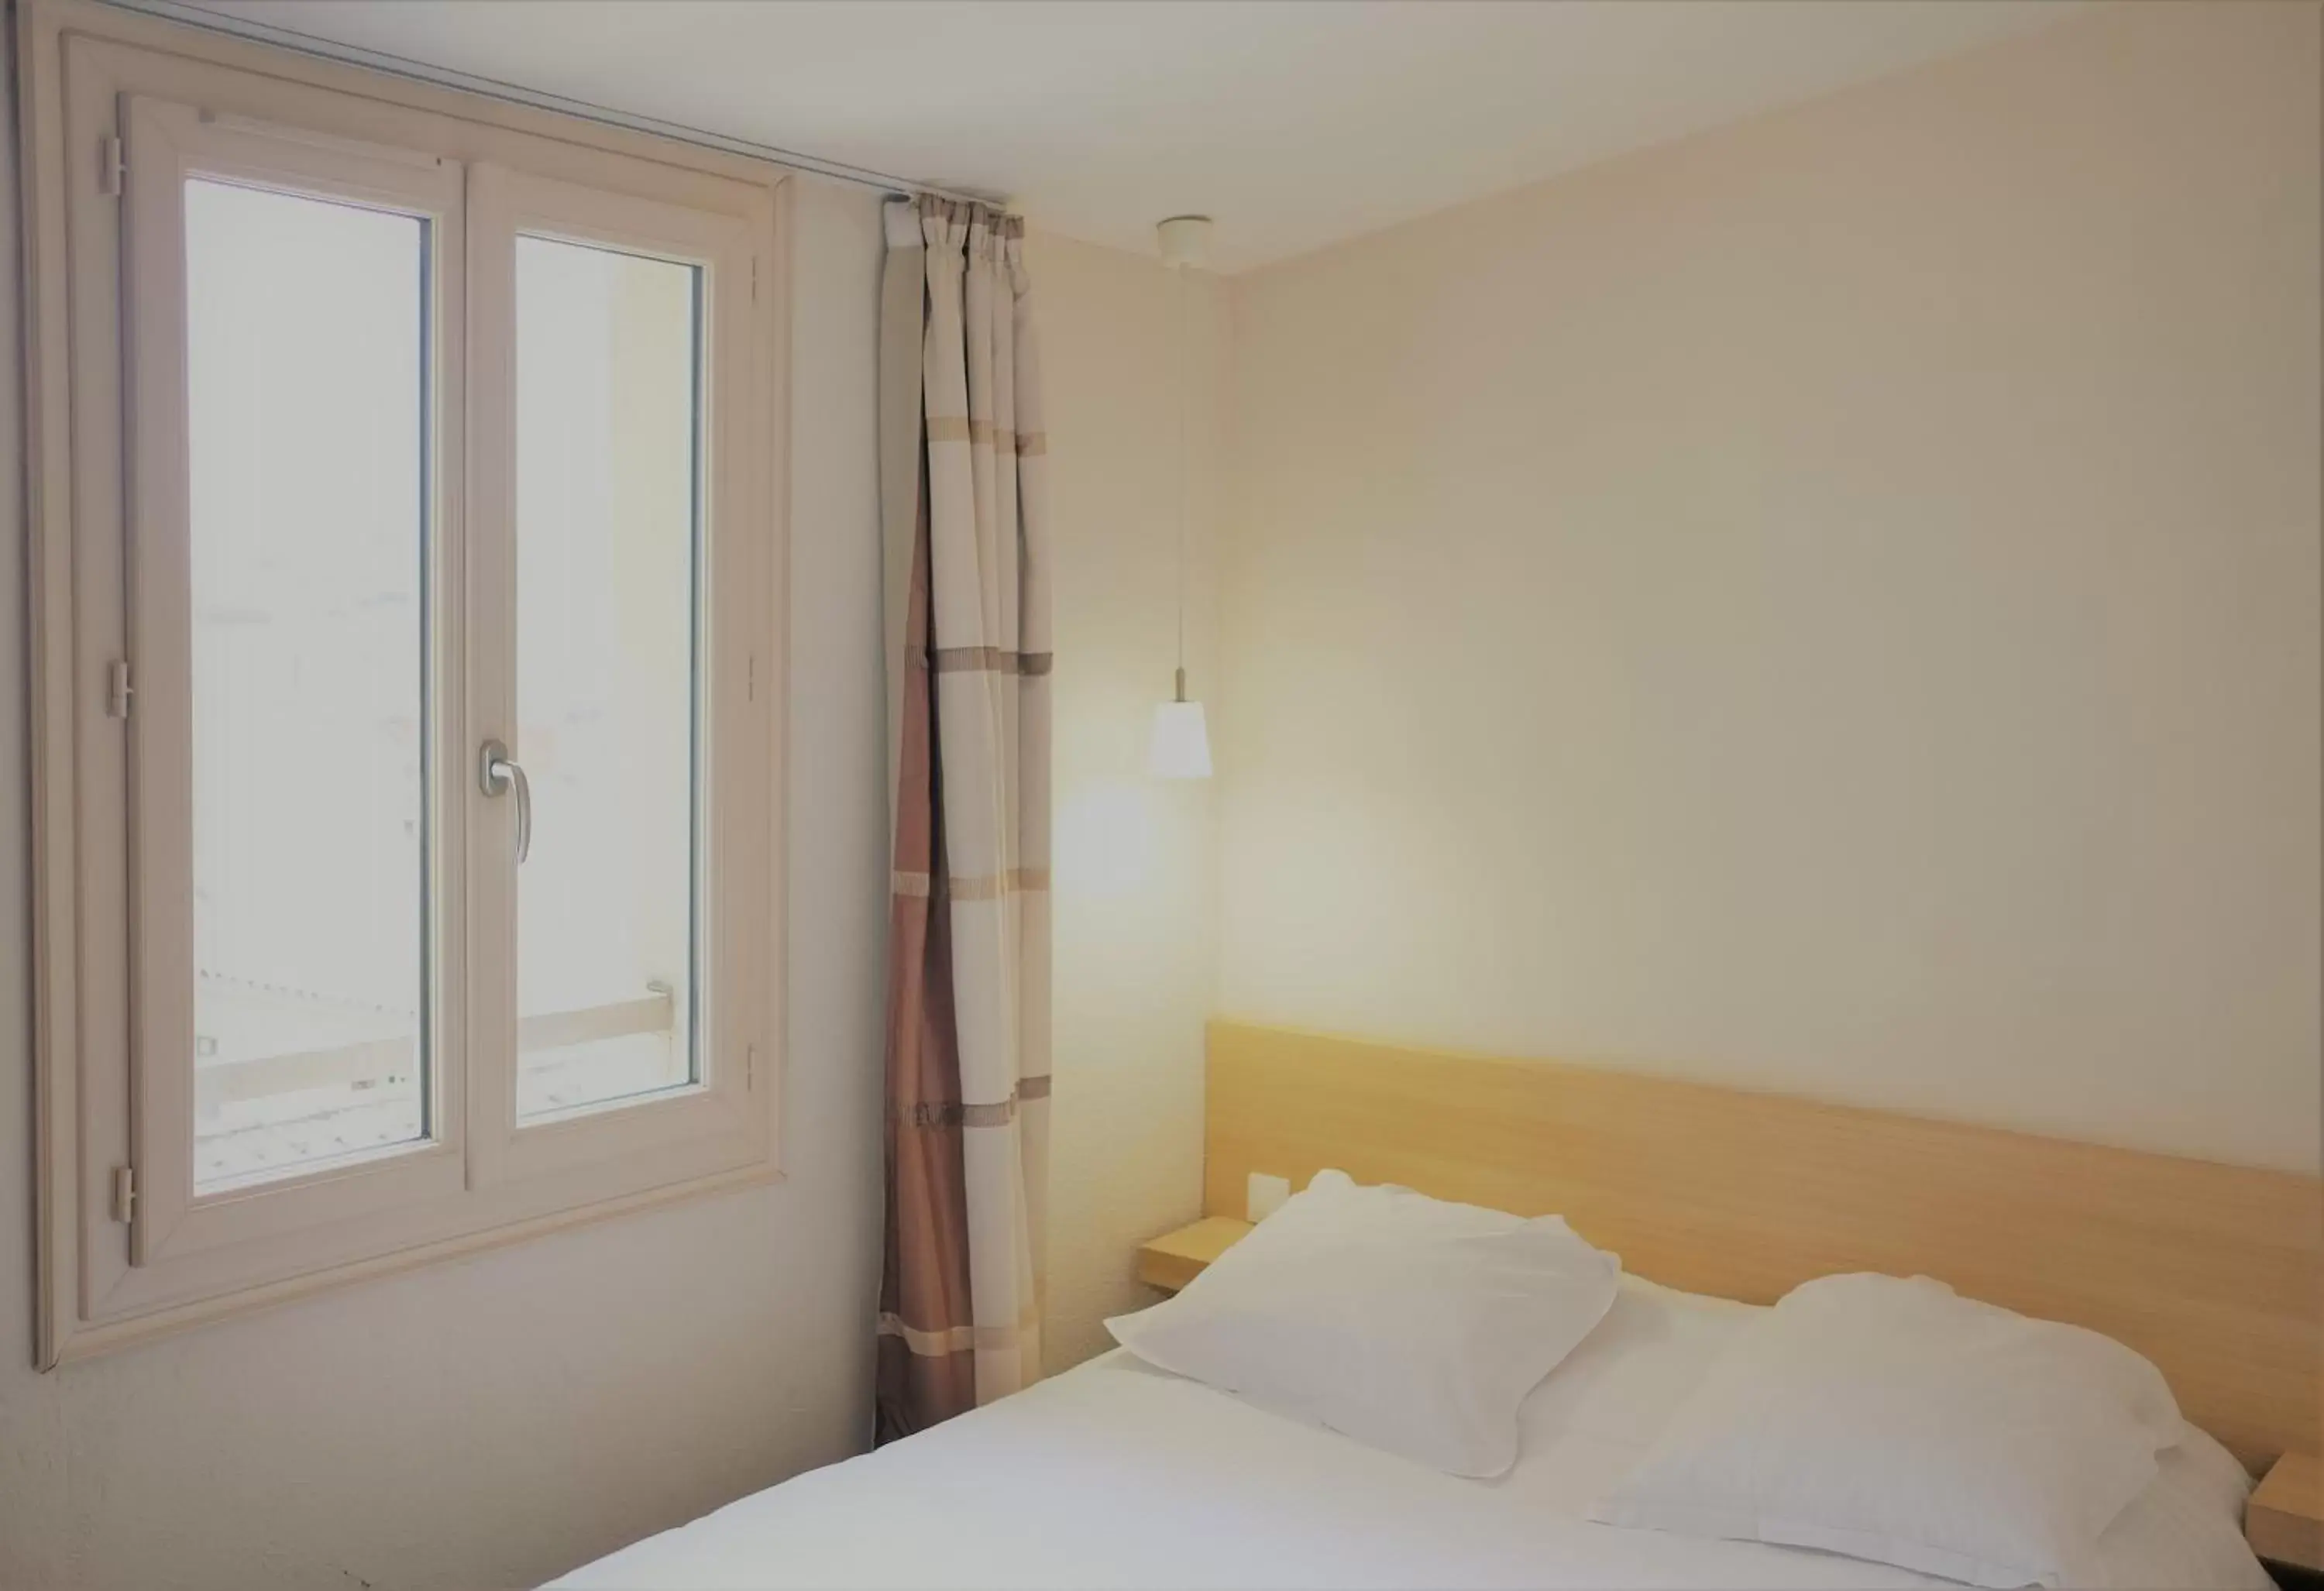 Bedroom, Bed in Hotel Gambetta